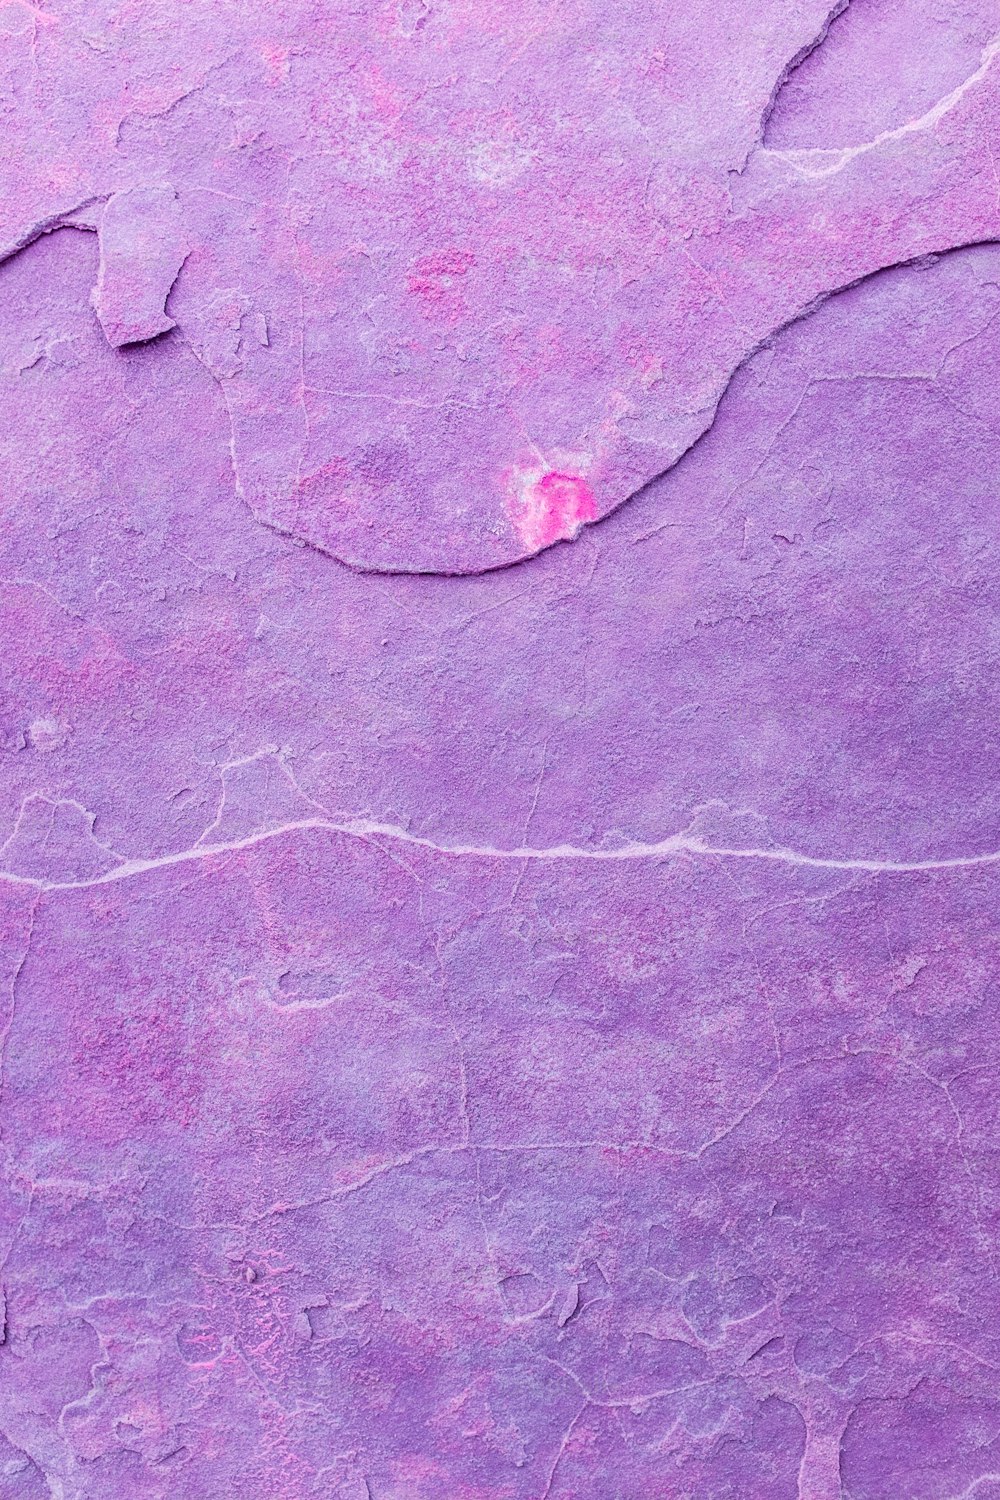 um close up de uma superfície roxa com um pequeno orifício no meio